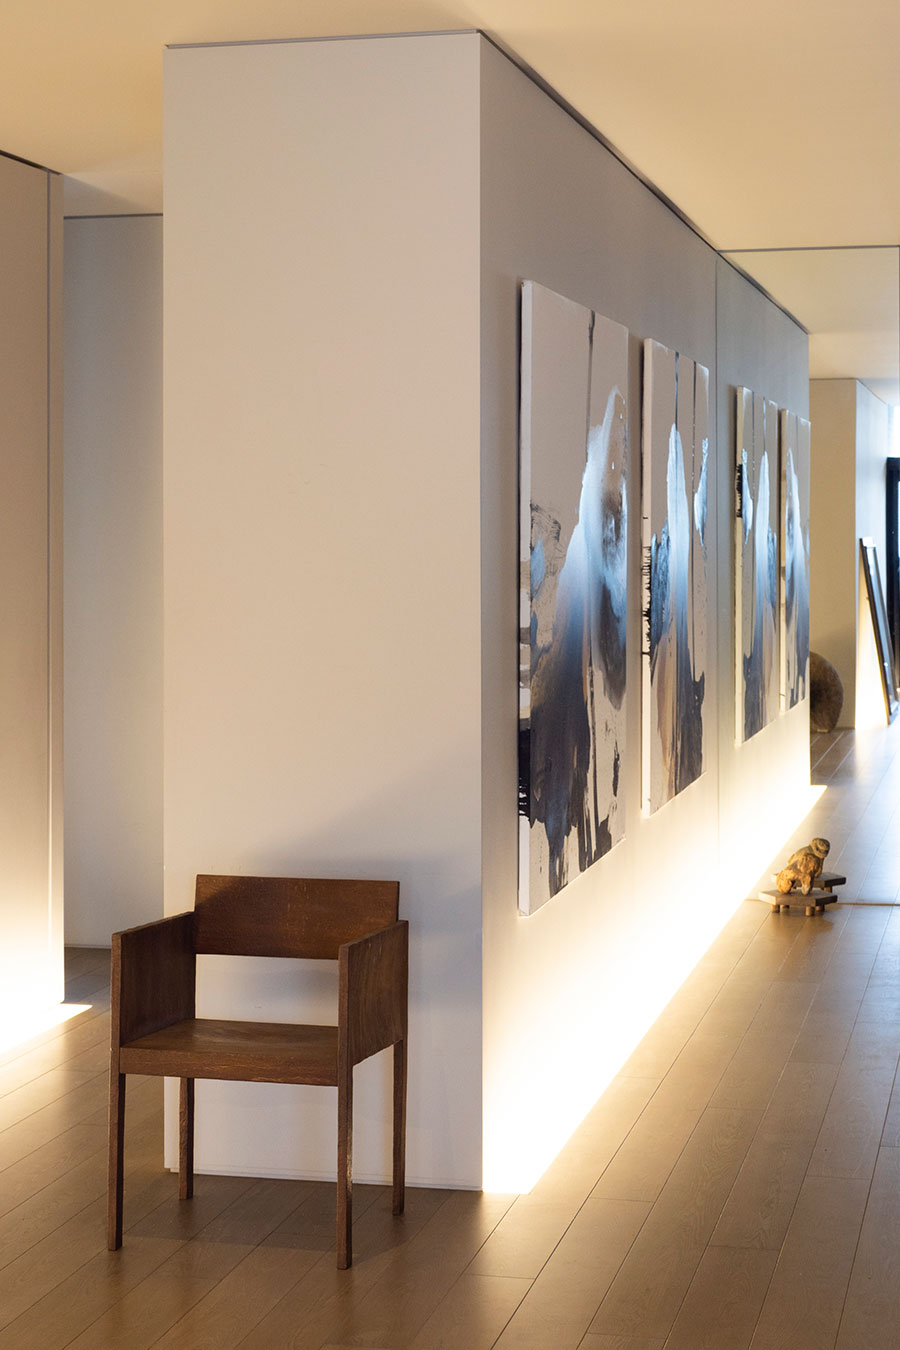 廊下を設ける代わりの緩やかな仕切りは、ギャラリースペースのよう。手前のオブジェは工芸作家・羽生野亜の作品。